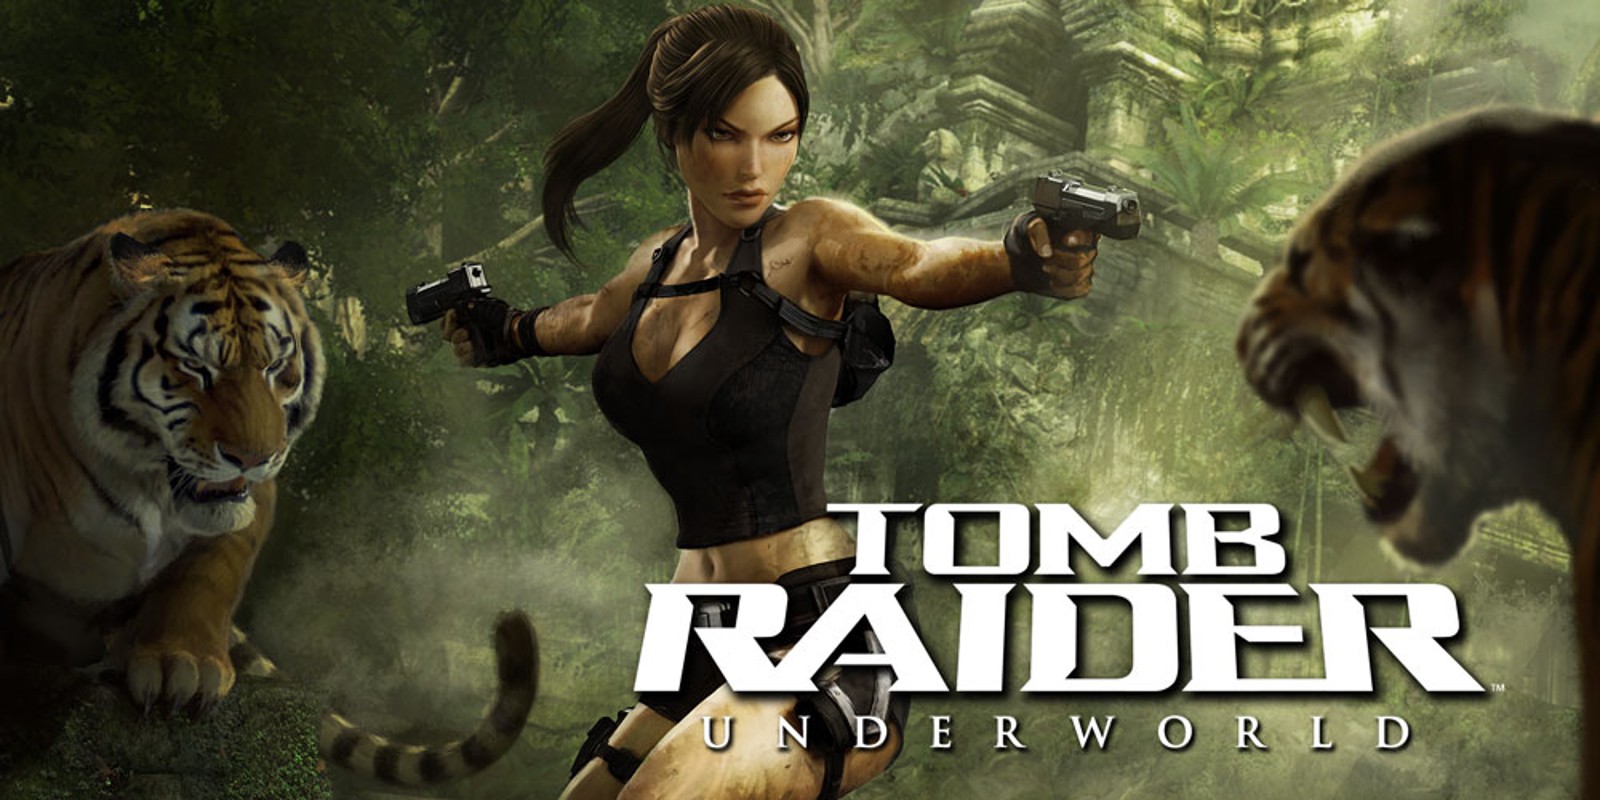  Tomb Raider Underworld : Video Games